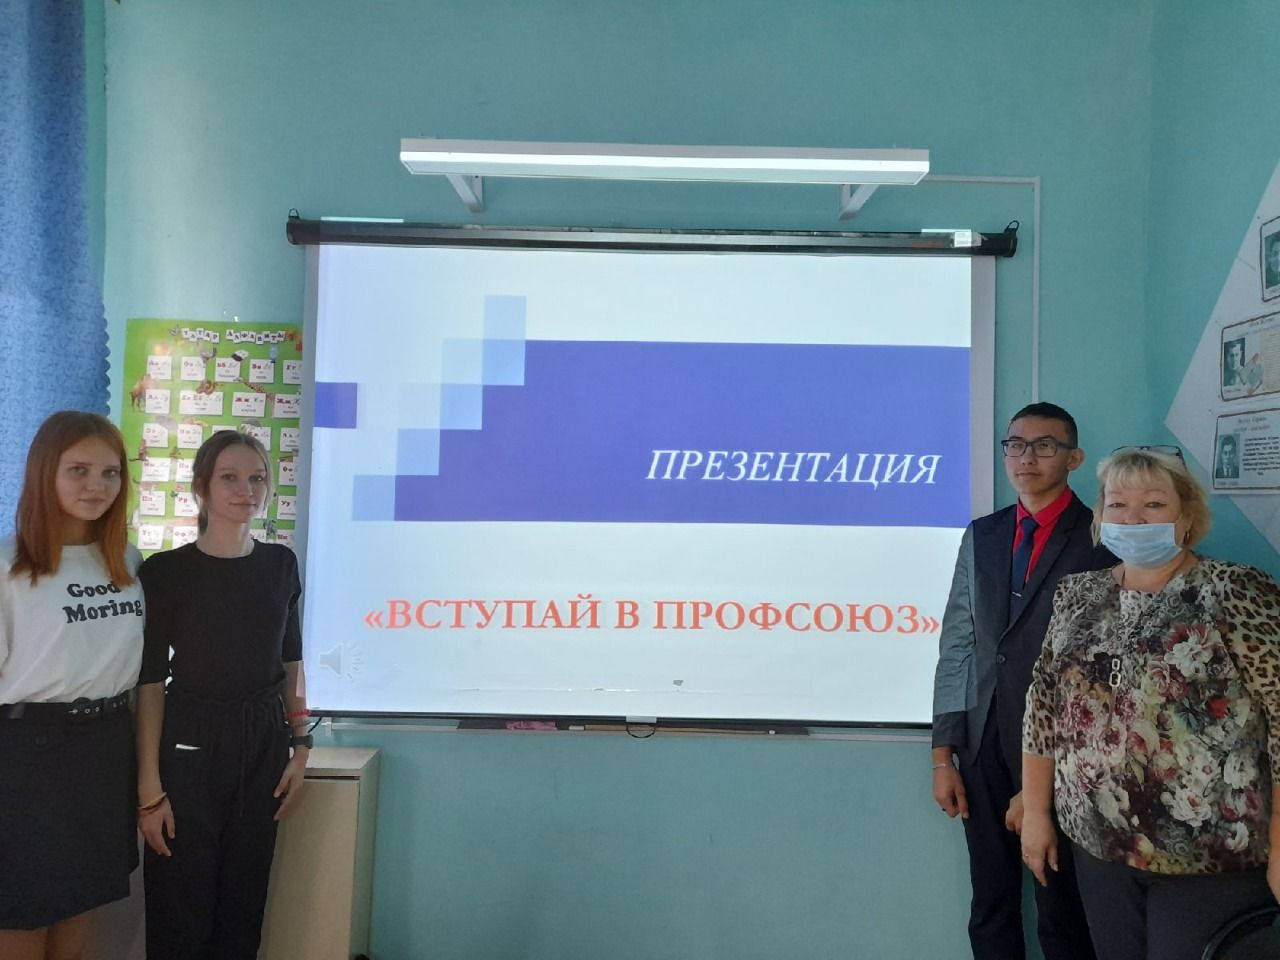 В Бураковской средней школе состоялось открытие профсоюзной недели